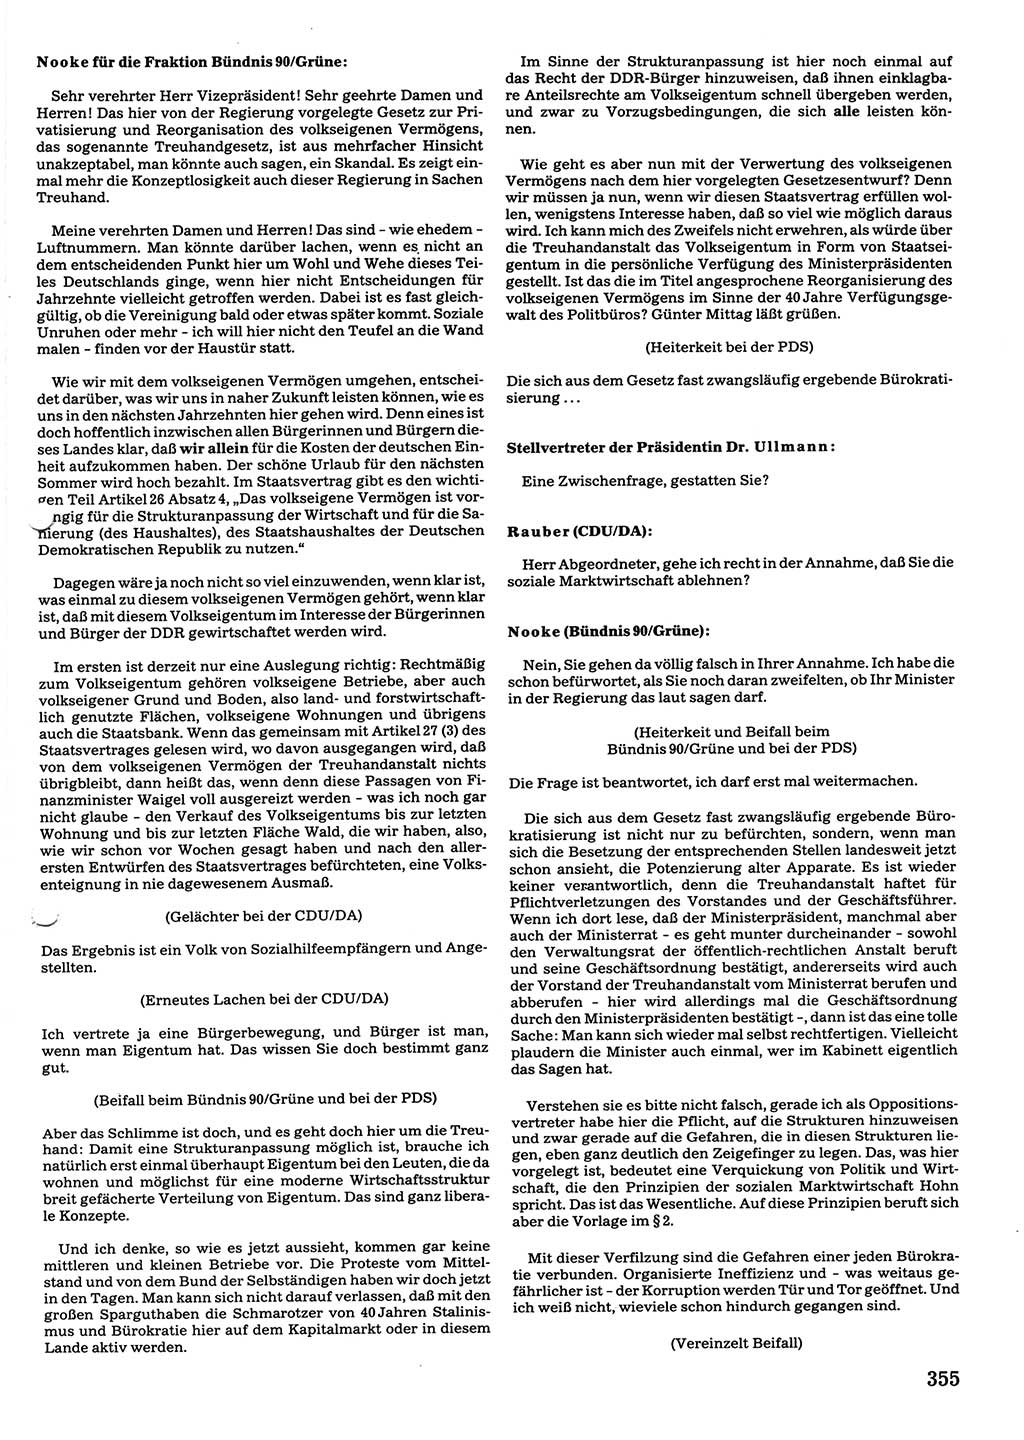 Tagungen der Volkskammer (VK) der Deutschen Demokratischen Republik (DDR), 10. Wahlperiode 1990, Seite 355 (VK. DDR 10. WP. 1990, Prot. Tg. 1-38, 5.4.-2.10.1990, S. 355)